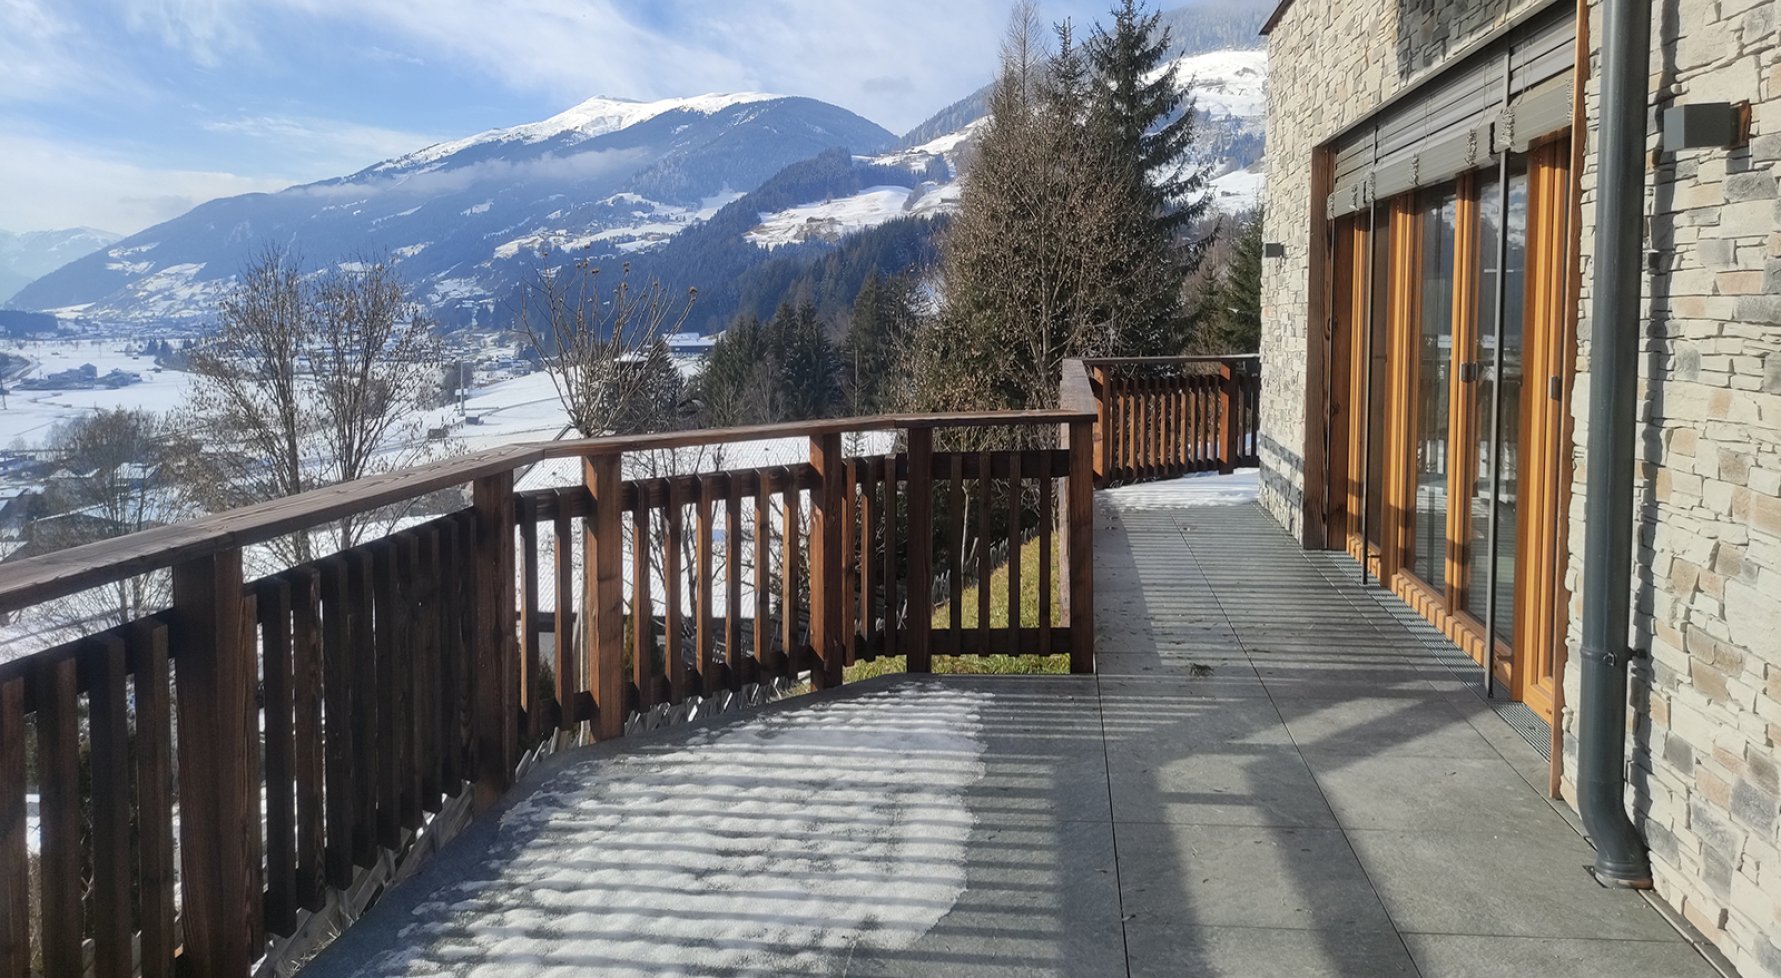 Immobilie in 5731 Nähe Kitzbühel: Zweitwohnsitz! Traumhafte 3-Zimmer Terrassenwohnung nahe der Kitzbüheler Alpen - bild 1